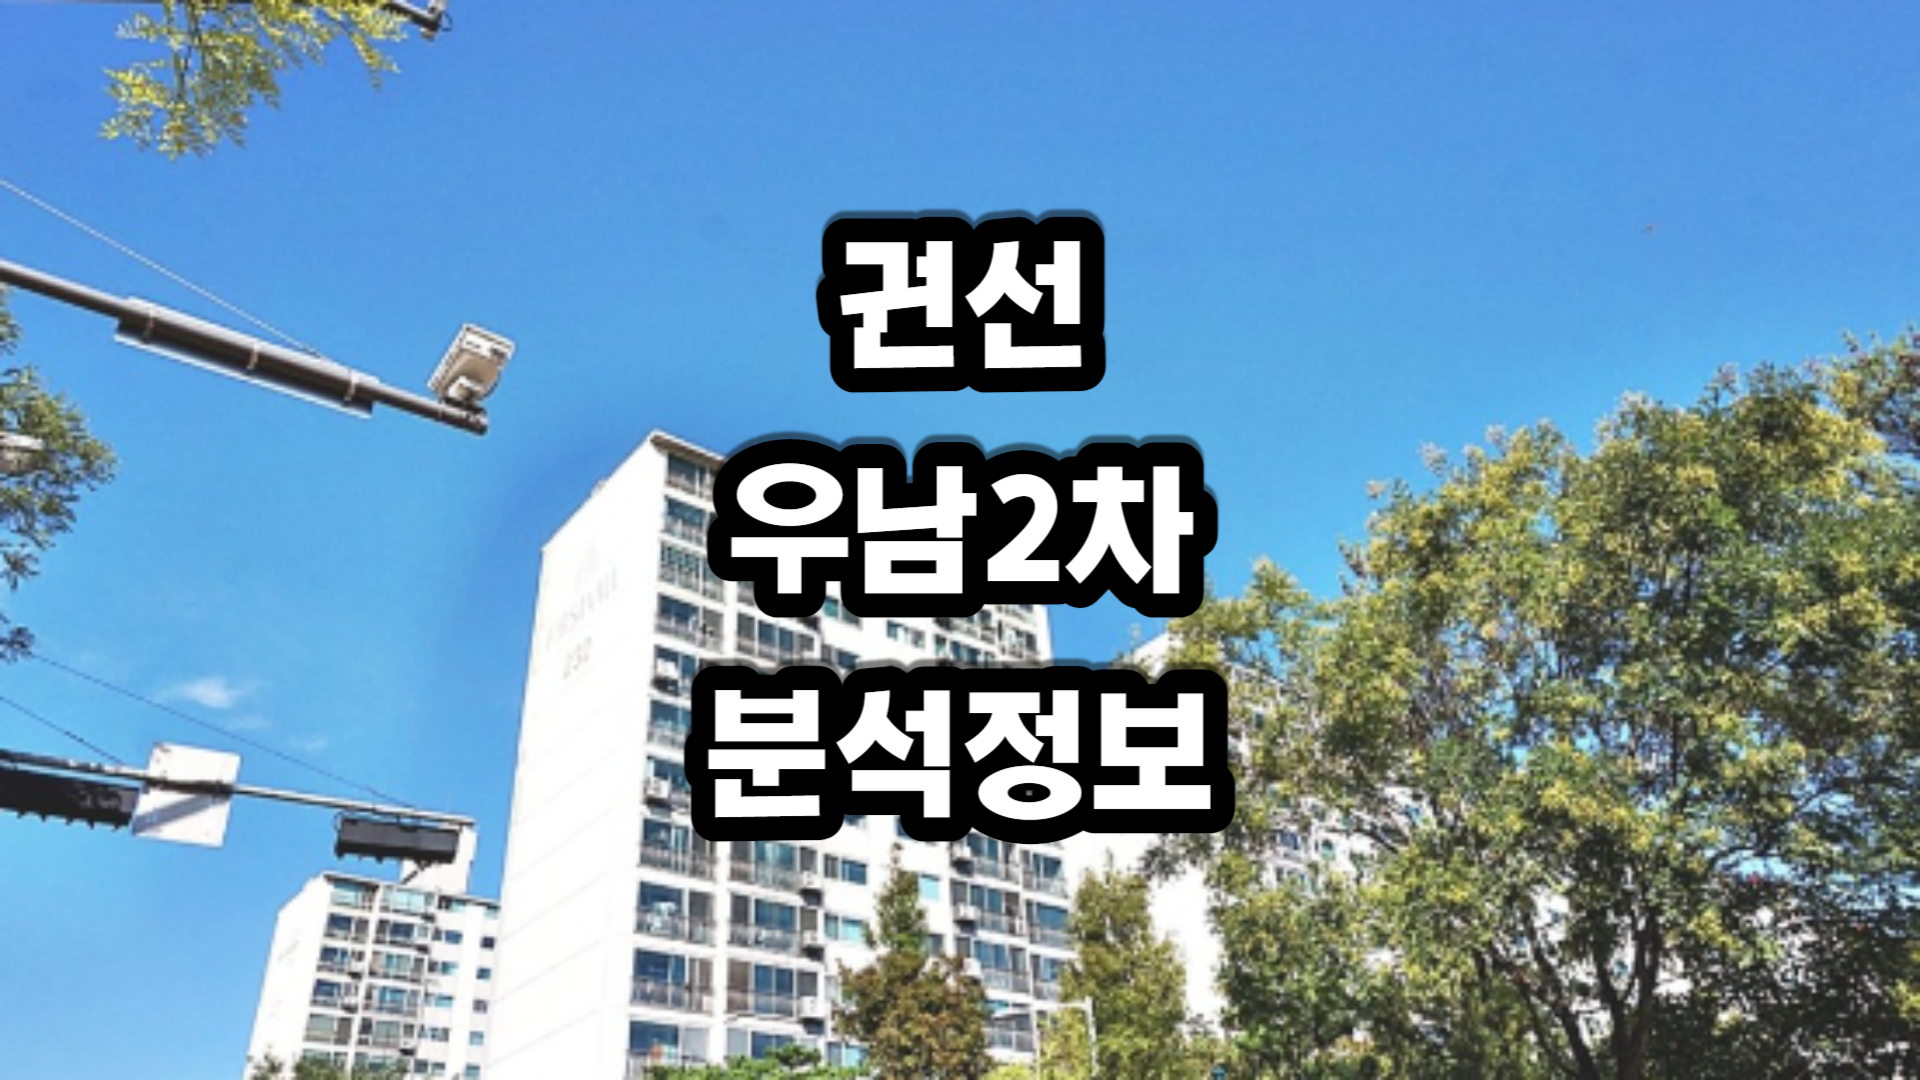 권선 우남 2차 아파트-분석정보